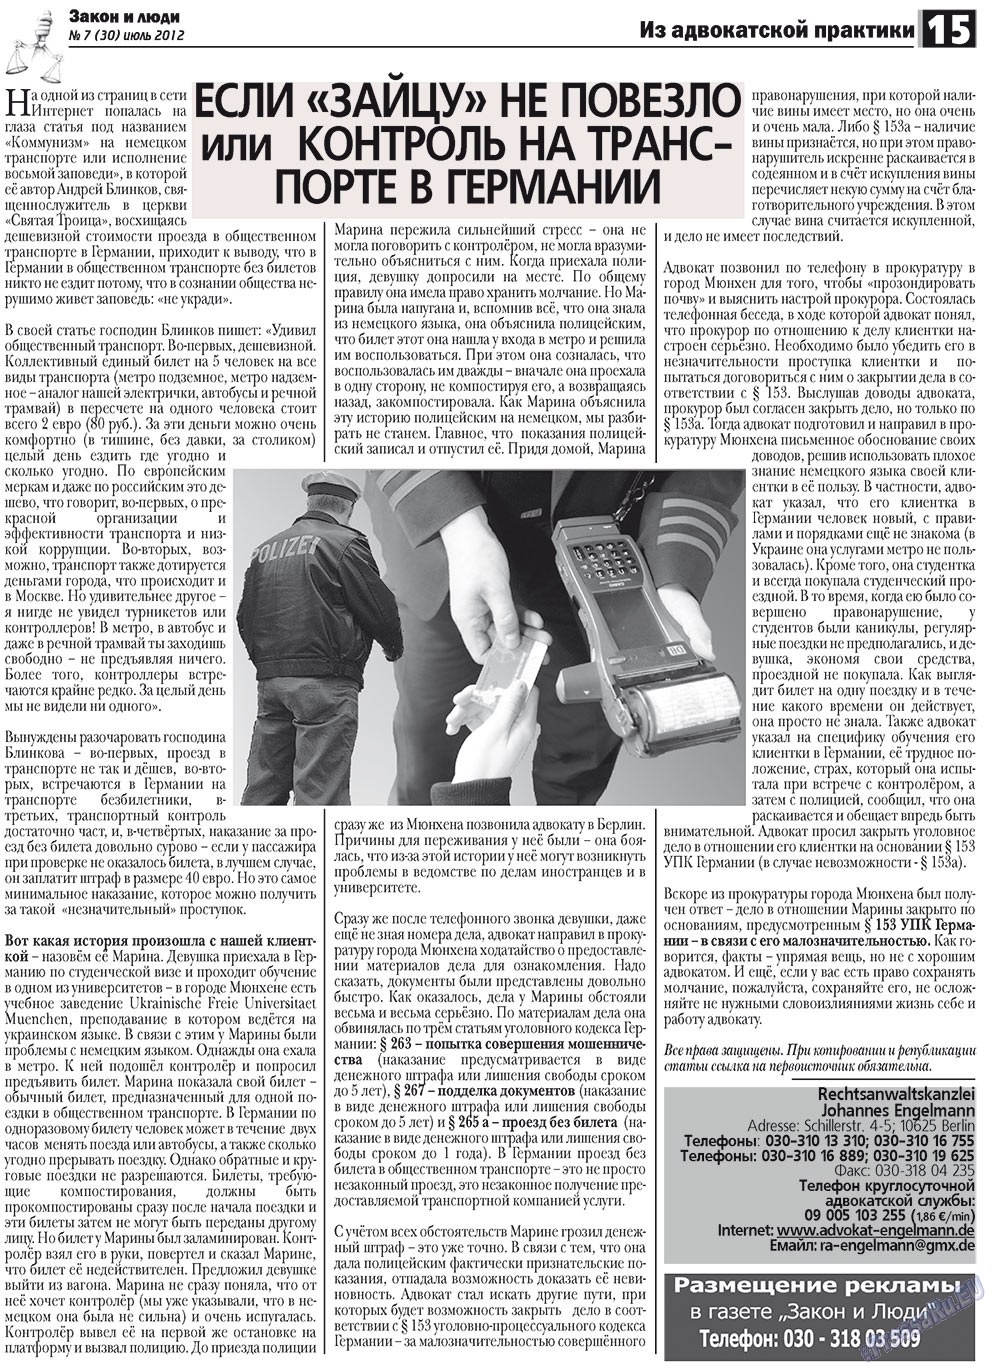 Закон и люди, газета. 2012 №7 стр.15